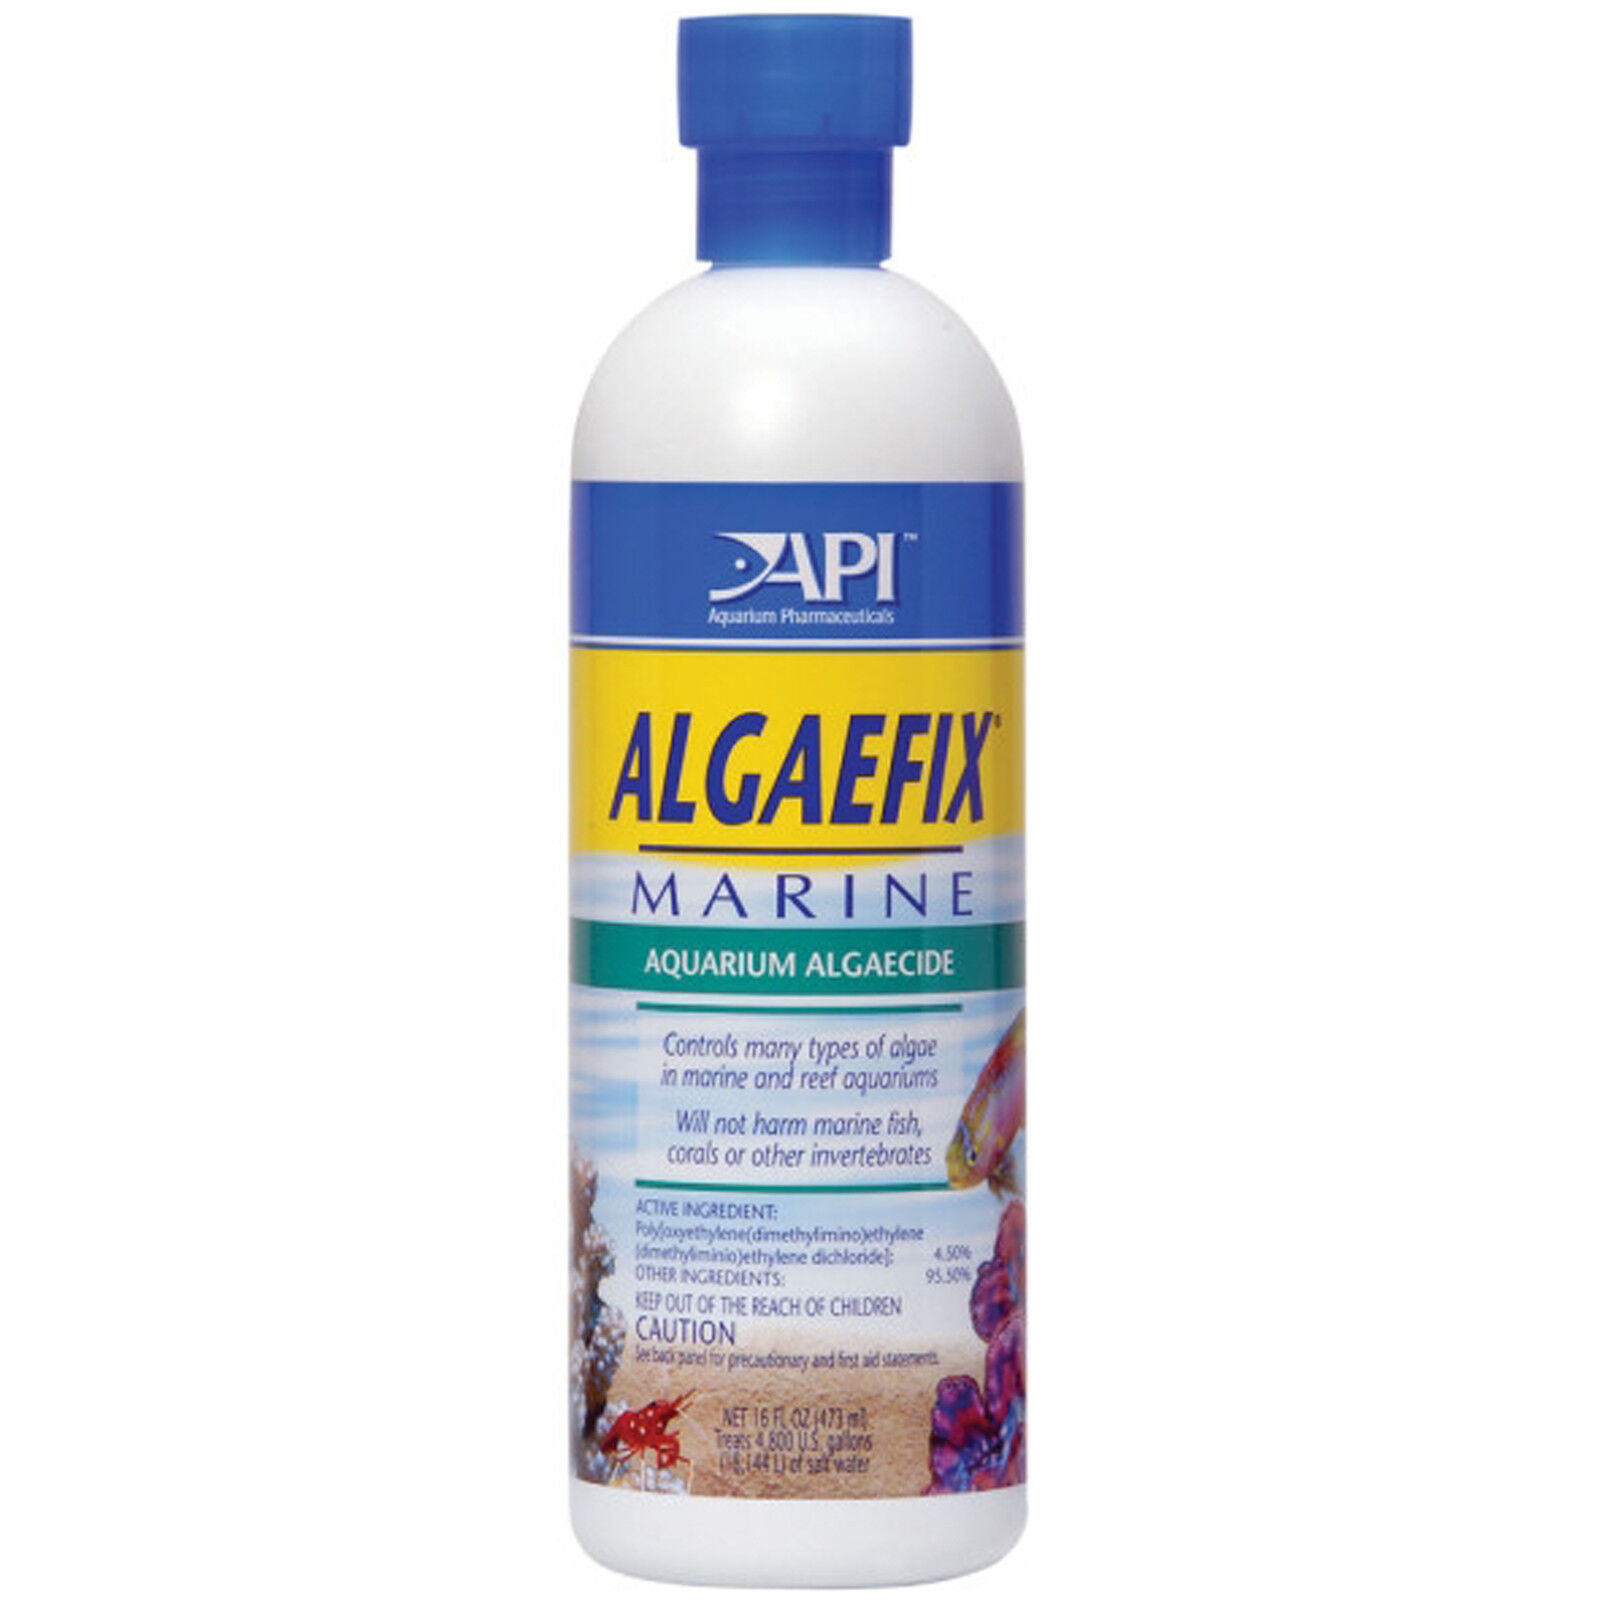 Aquarium Pharmaceuticals Algaefix Marine 16 oz Reef Safe Algaecide FREE USA SHIP